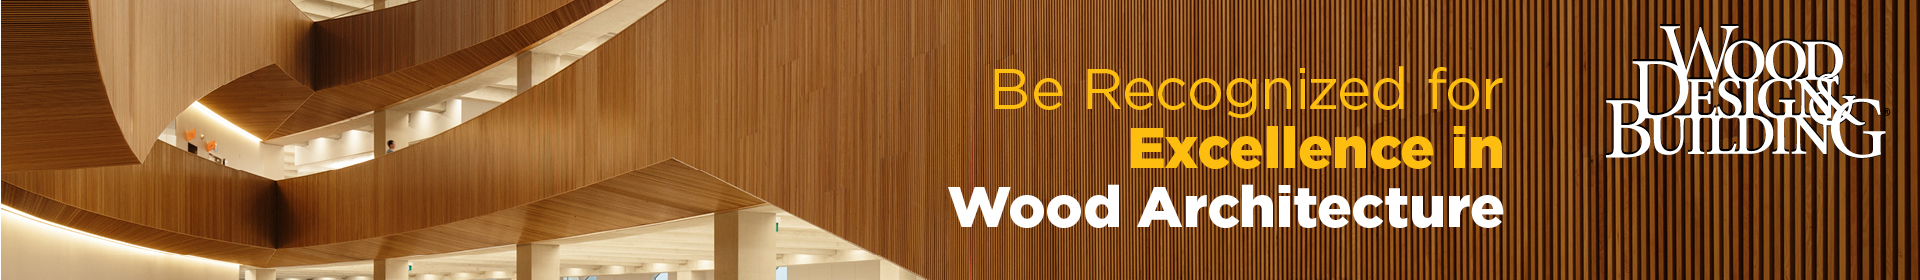 2020 Wood Design & Building Awards Event Banner